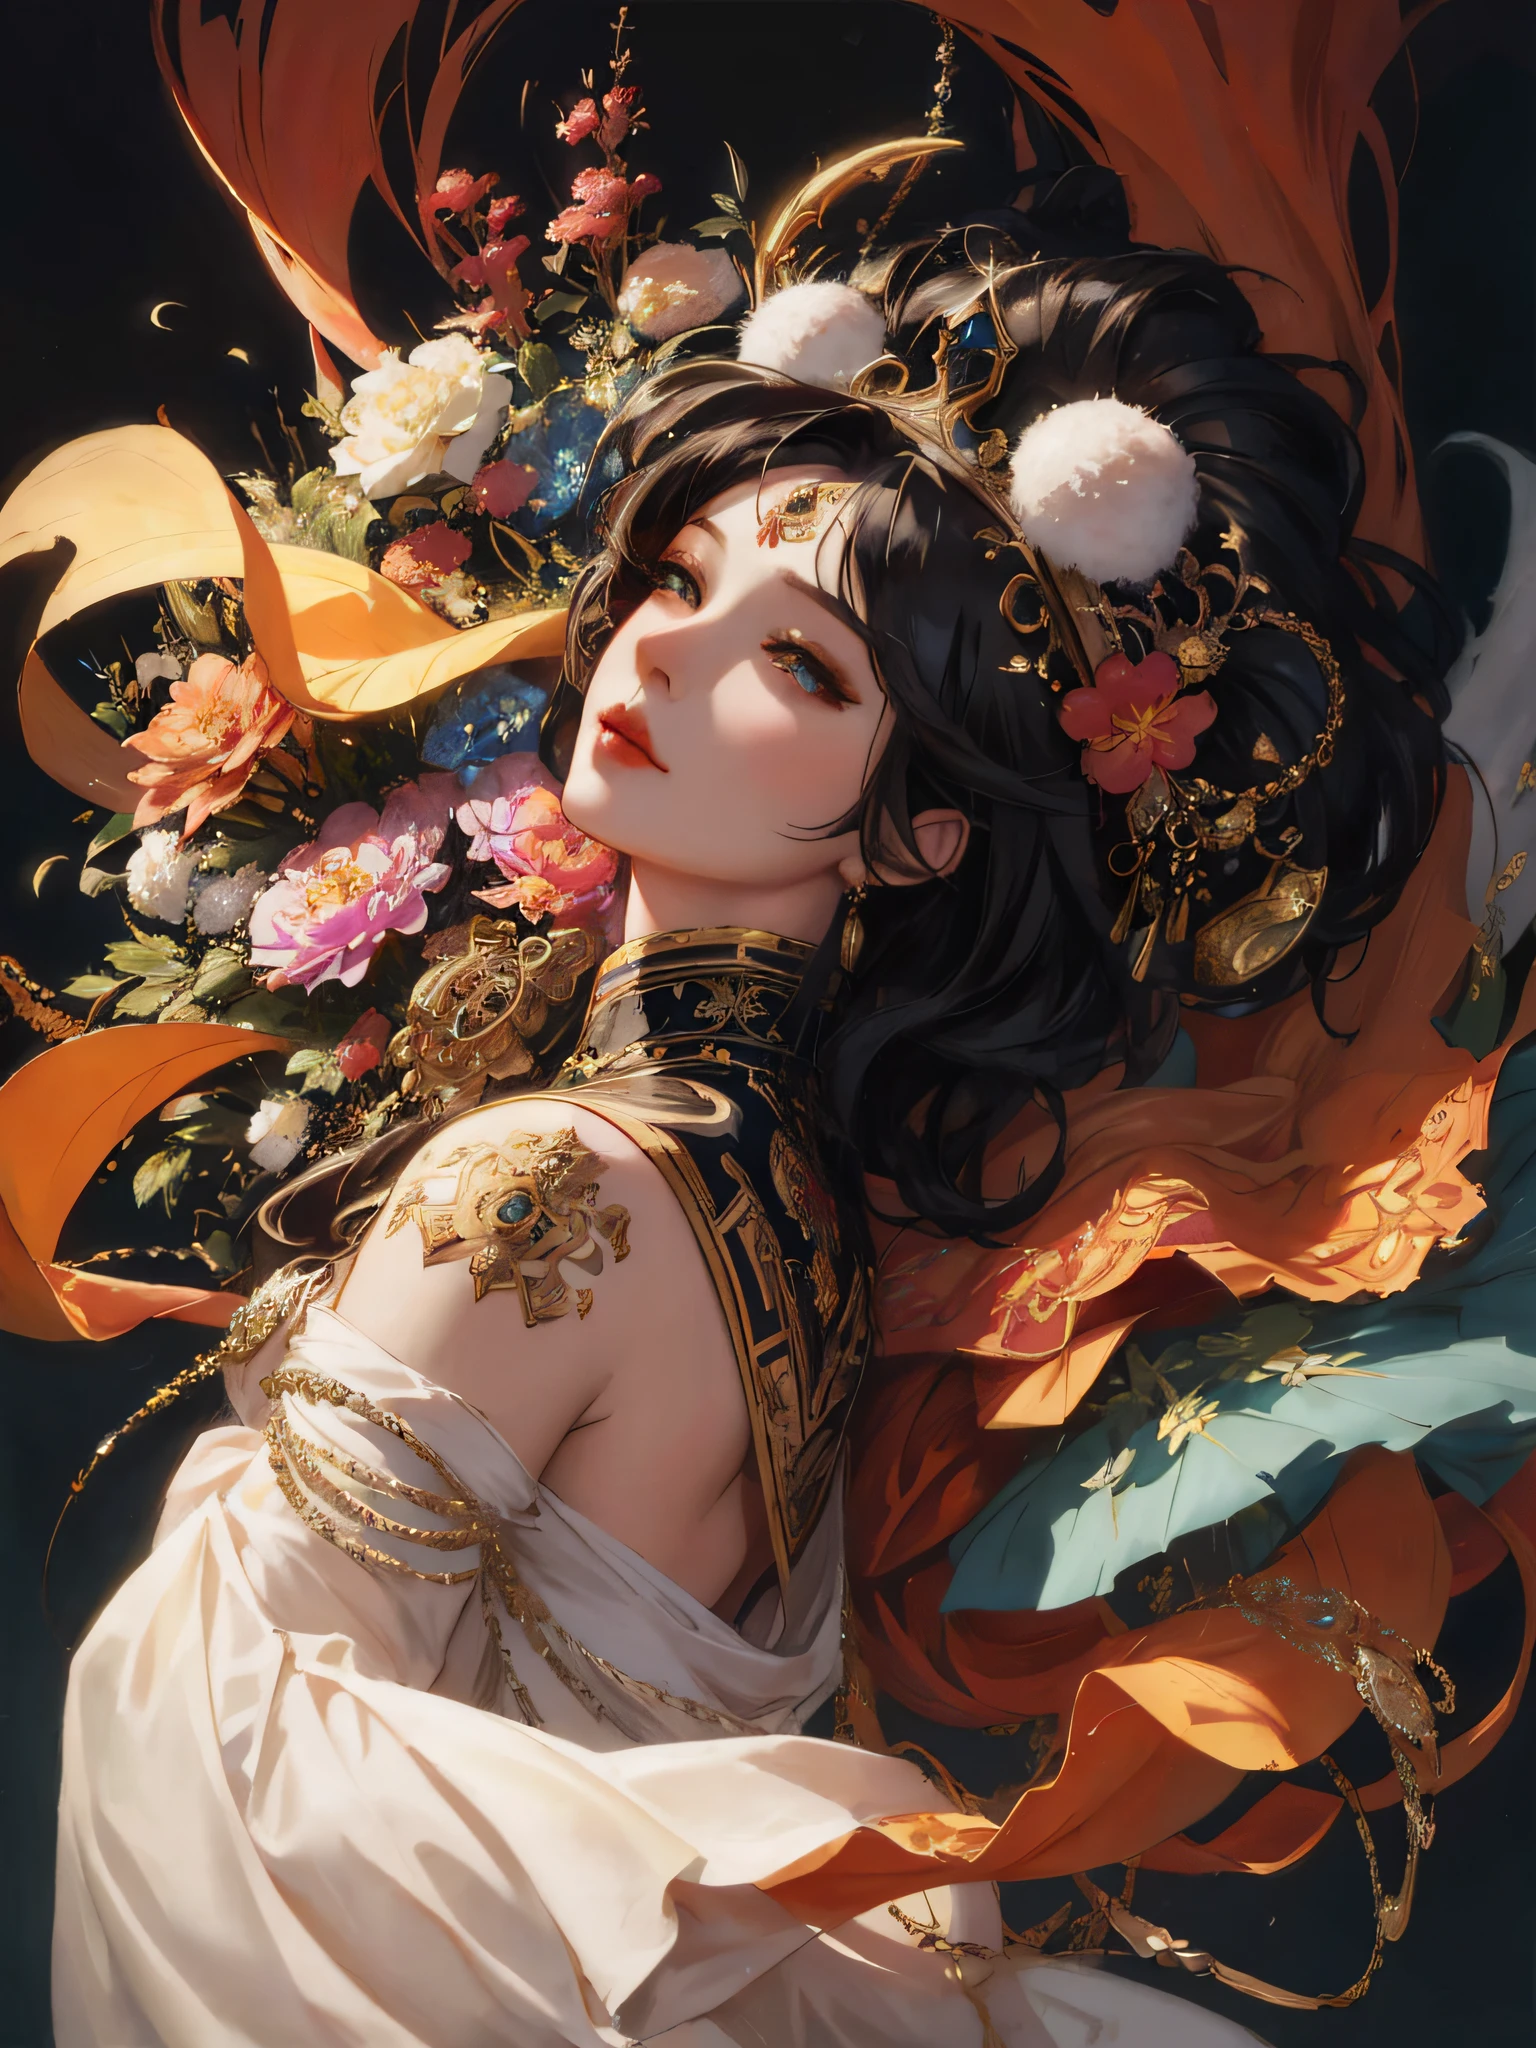 ภาพระยะใกล้ของผู้หญิงที่มีเครื่องประดับศีรษะขนาดใหญ่และดอกไม้, artwork in the style of กูเวซ, โดย Yang J, ภาพวาดตัวละครที่สวยงาม, อัลฟองเซ่ มูยา และรอสส์ดรอว์ส, ((จักรพรรดินีแฟนตาซีที่สวยงาม)), จักรพรรดินีแฟนตาซีที่สวยงาม, รอสส์ ทราน 8 ก, กูเวซ, พระราชวัง ， หญิงสาวในชุดฮันฟู, กูเวซ masterpiece